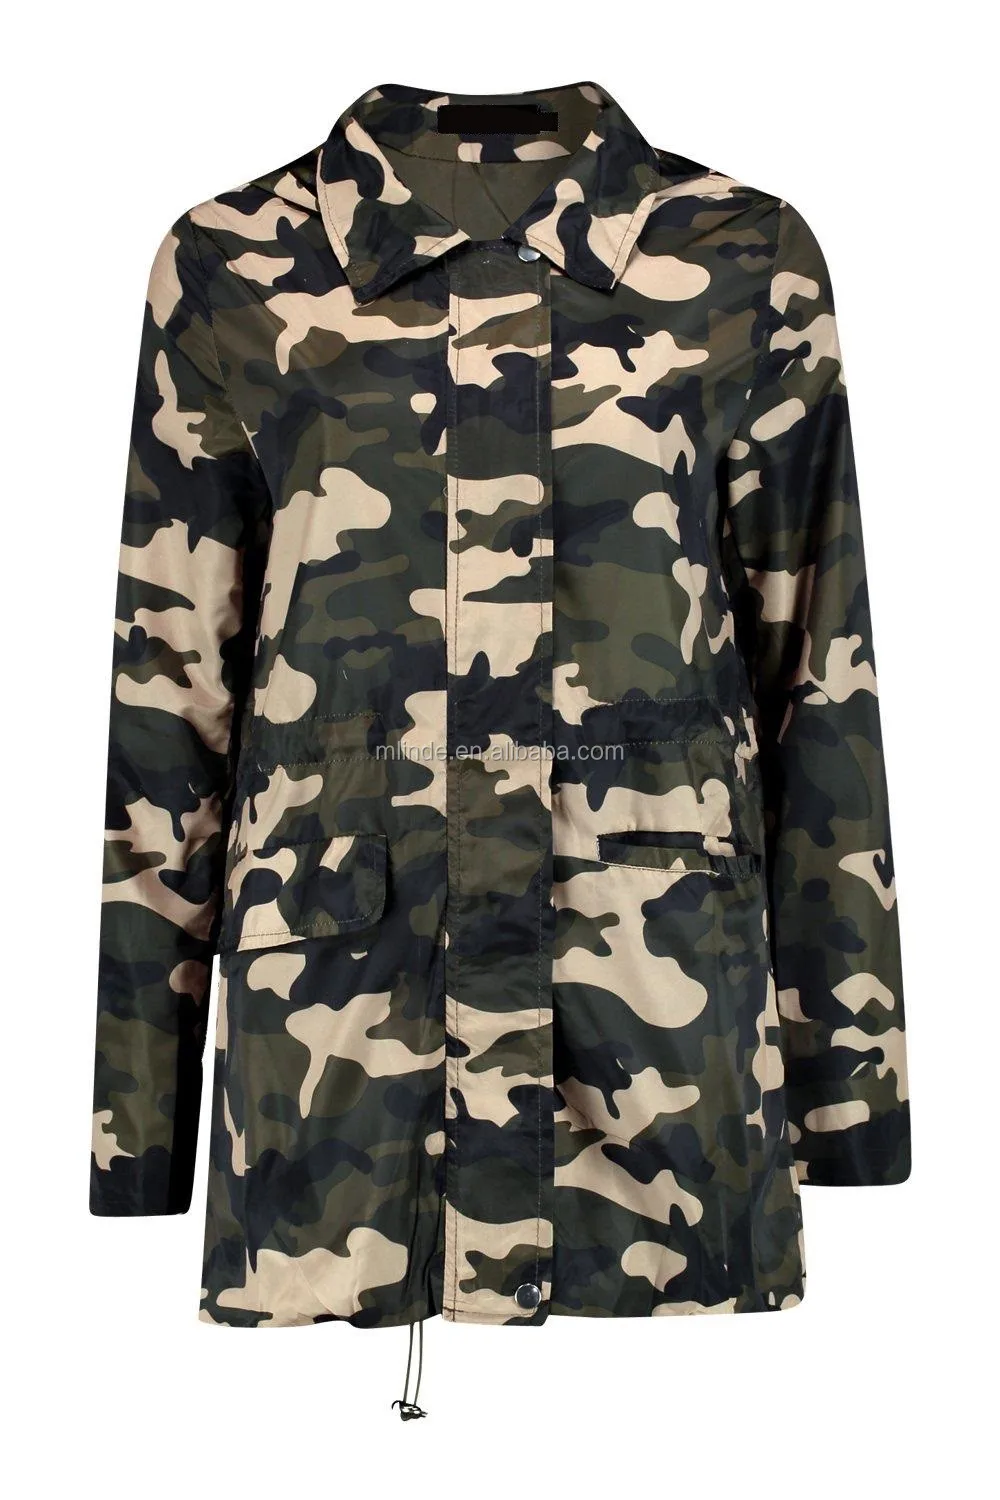 Women's Camouflage Hoodie Military Jacket Zip-up Outdoor Coat Camo ...